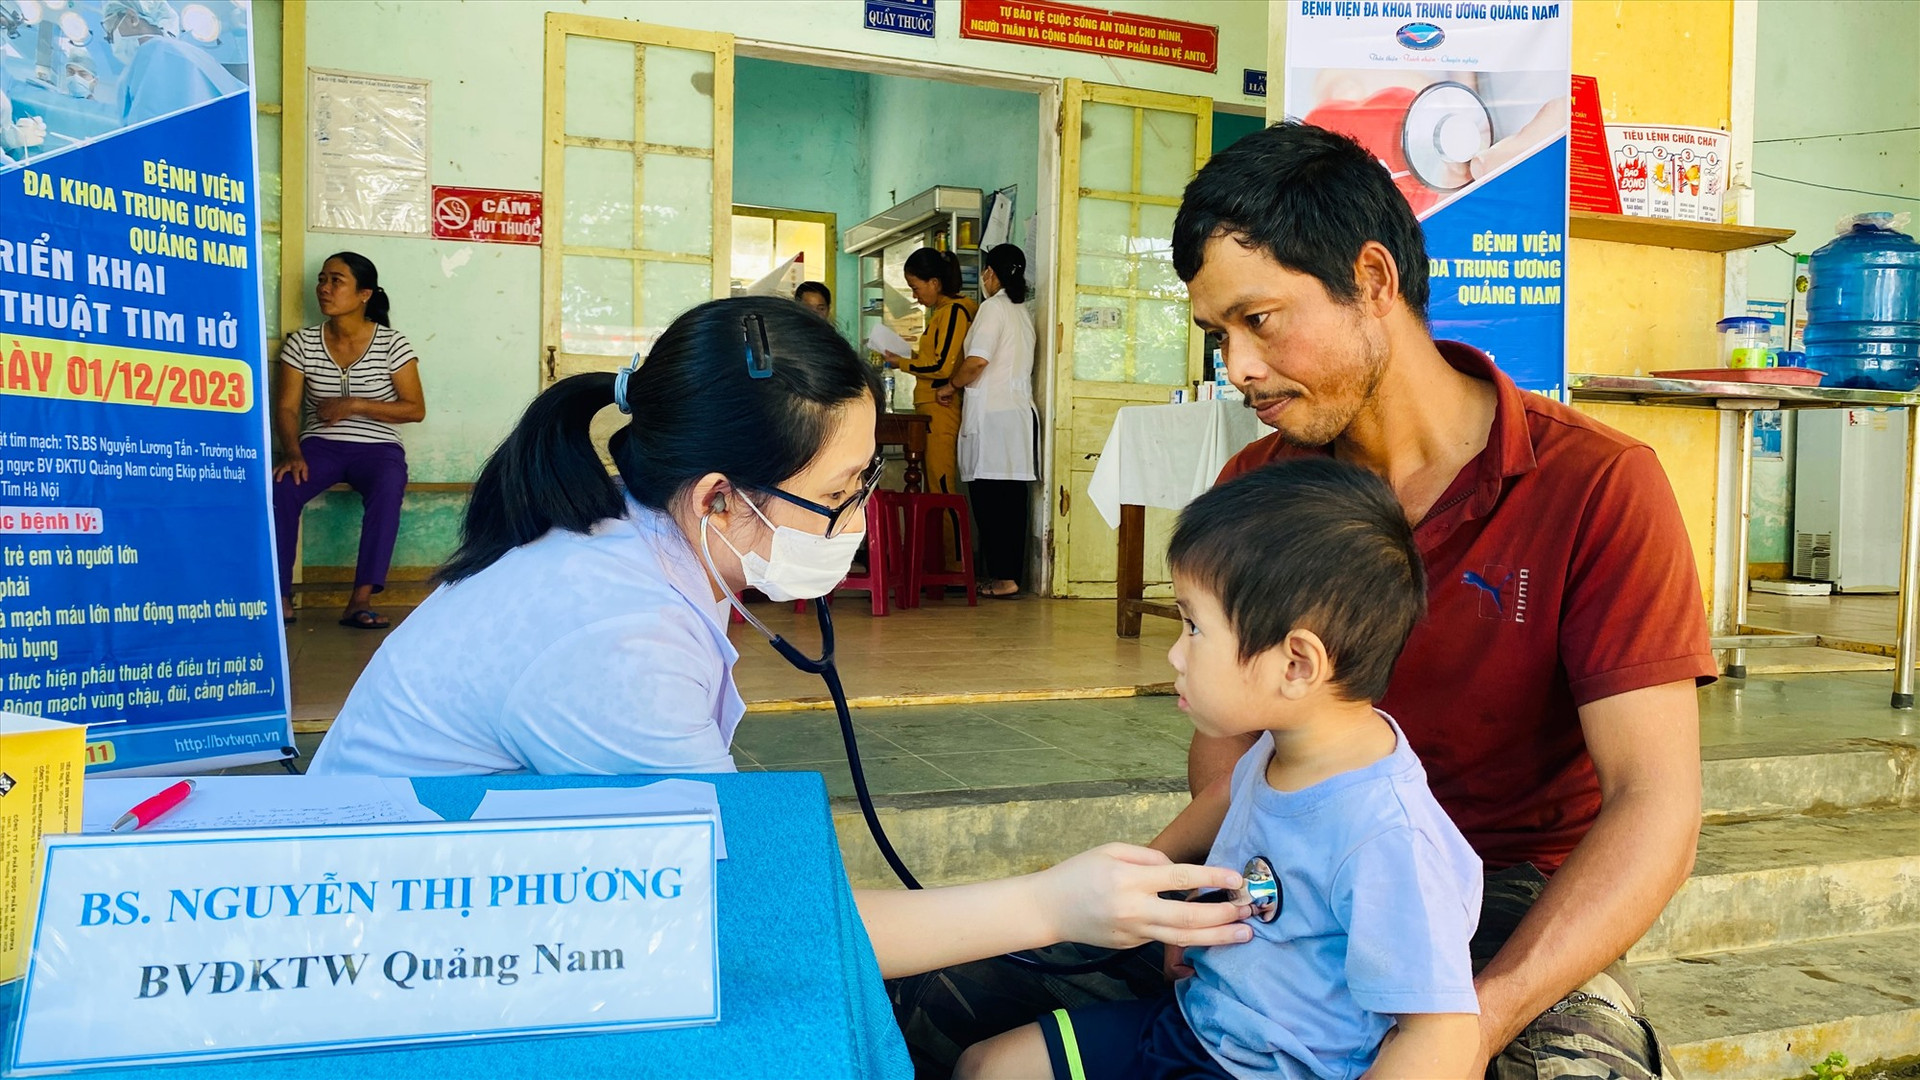 Bác sĩ đang khám tim miễn phí cho trẻ em tại xã Tam Sơn (Núi Thành). Ảnh: QUẢNG CHƯƠNG